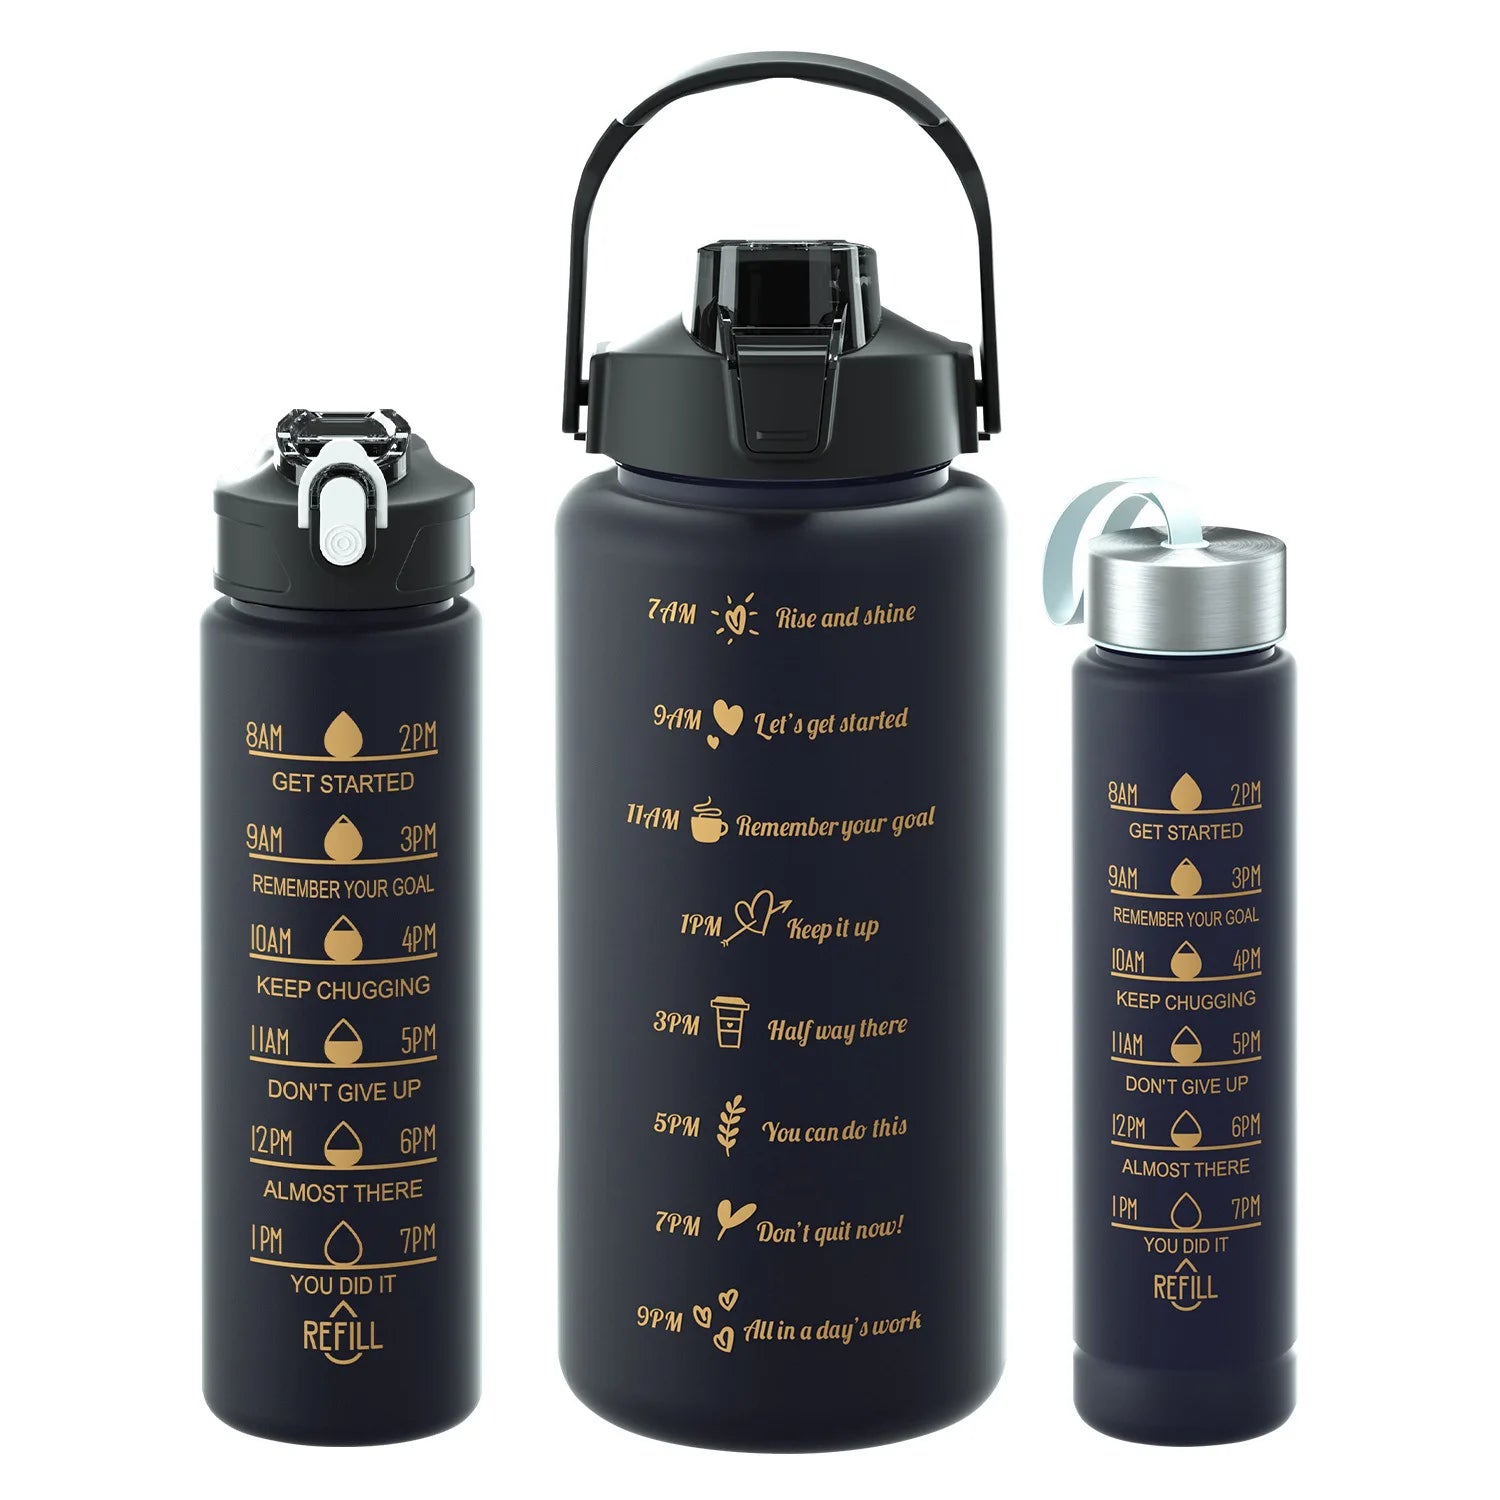 Das Bild zeigt drei schwarze Sporttrinkflaschen unterschiedlicher groesen und Zeitmarkierungen.